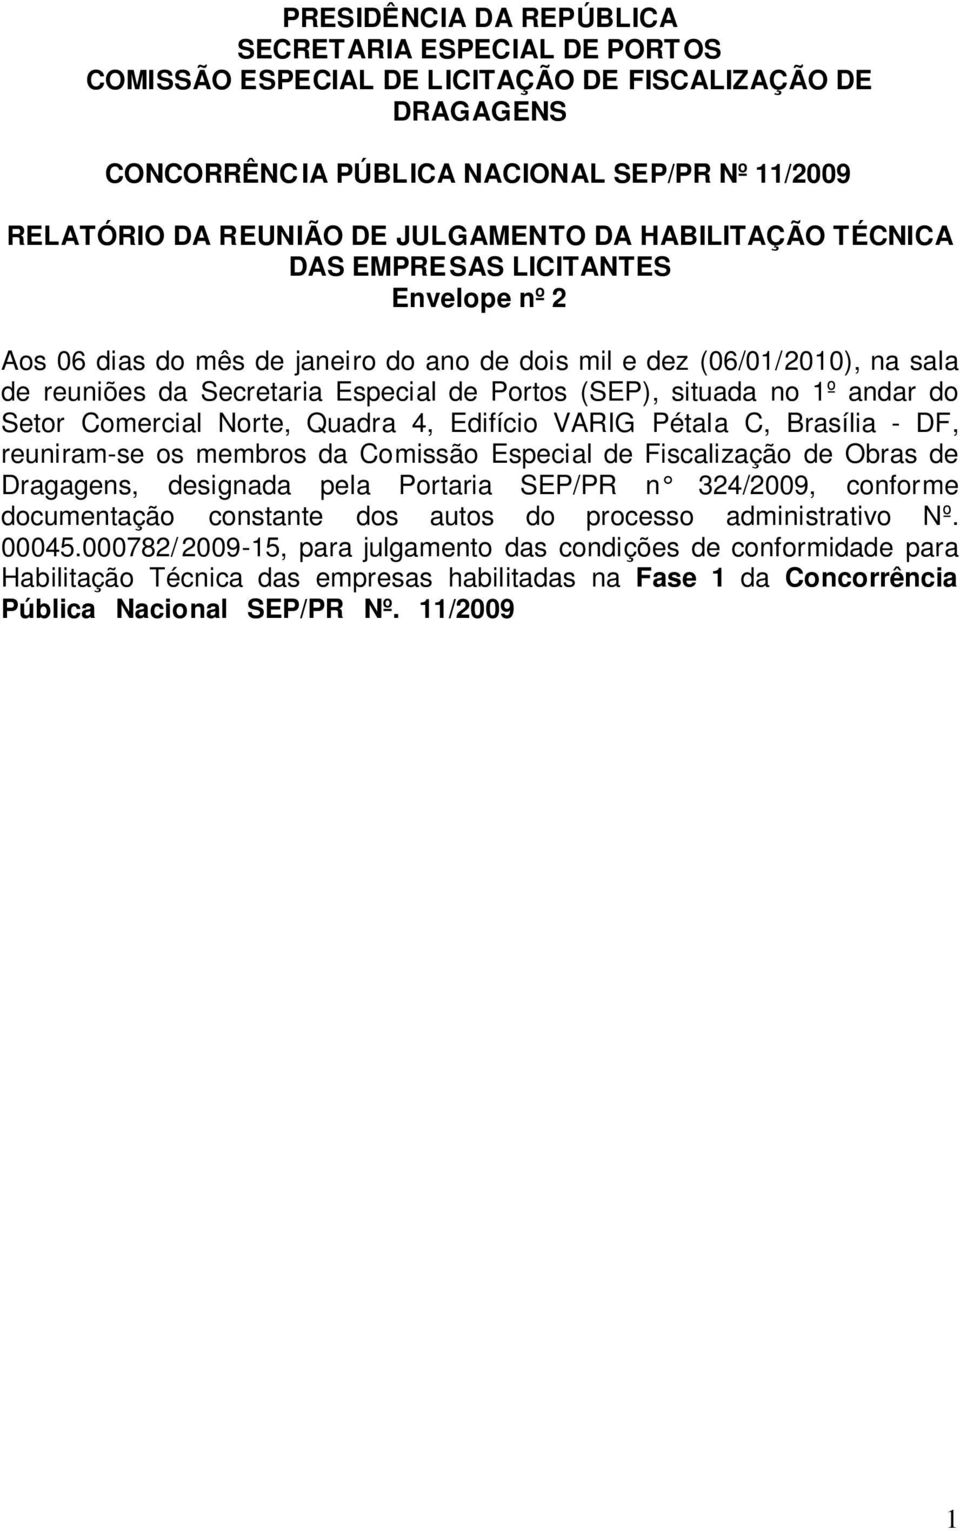 Comercial Norte, Quadra 4, Edifício VARIG Pétala C, Brasília - DF, reuniram-se os membros da Comissão Especial de Fiscalização de Obras de Dragagens, designada pela Portaria SEP/PR n 3/09, conforme